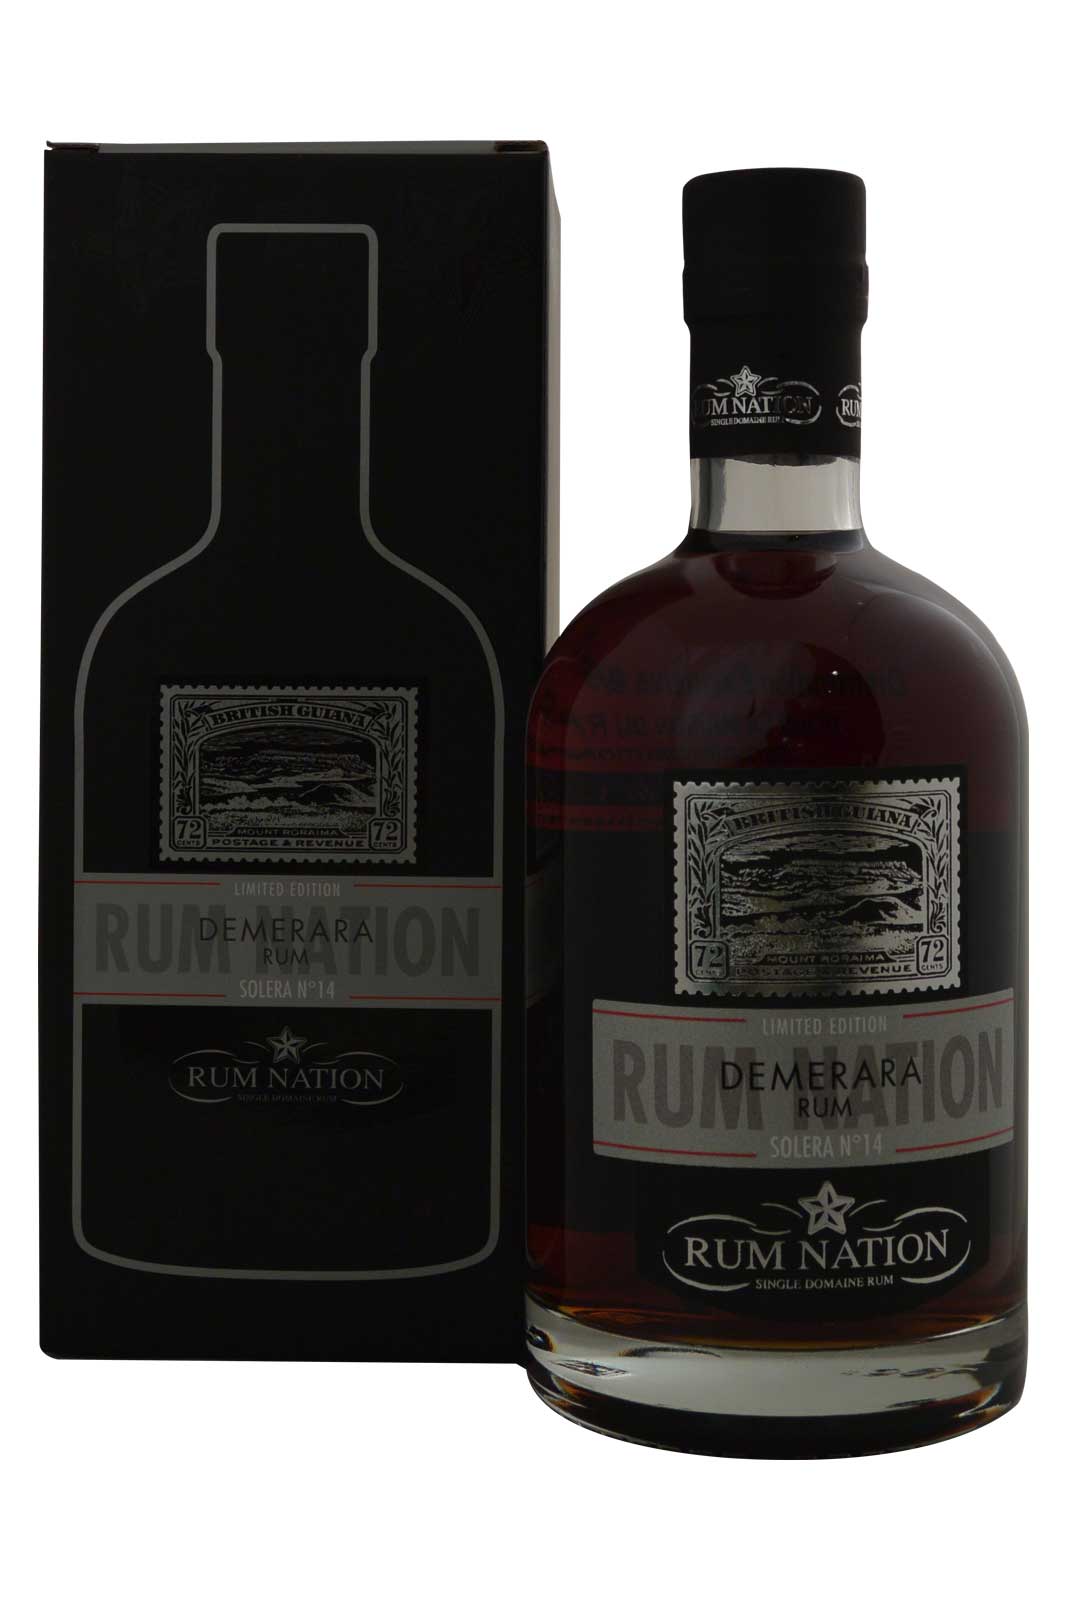 Rum Nation Demerara Solera n°14